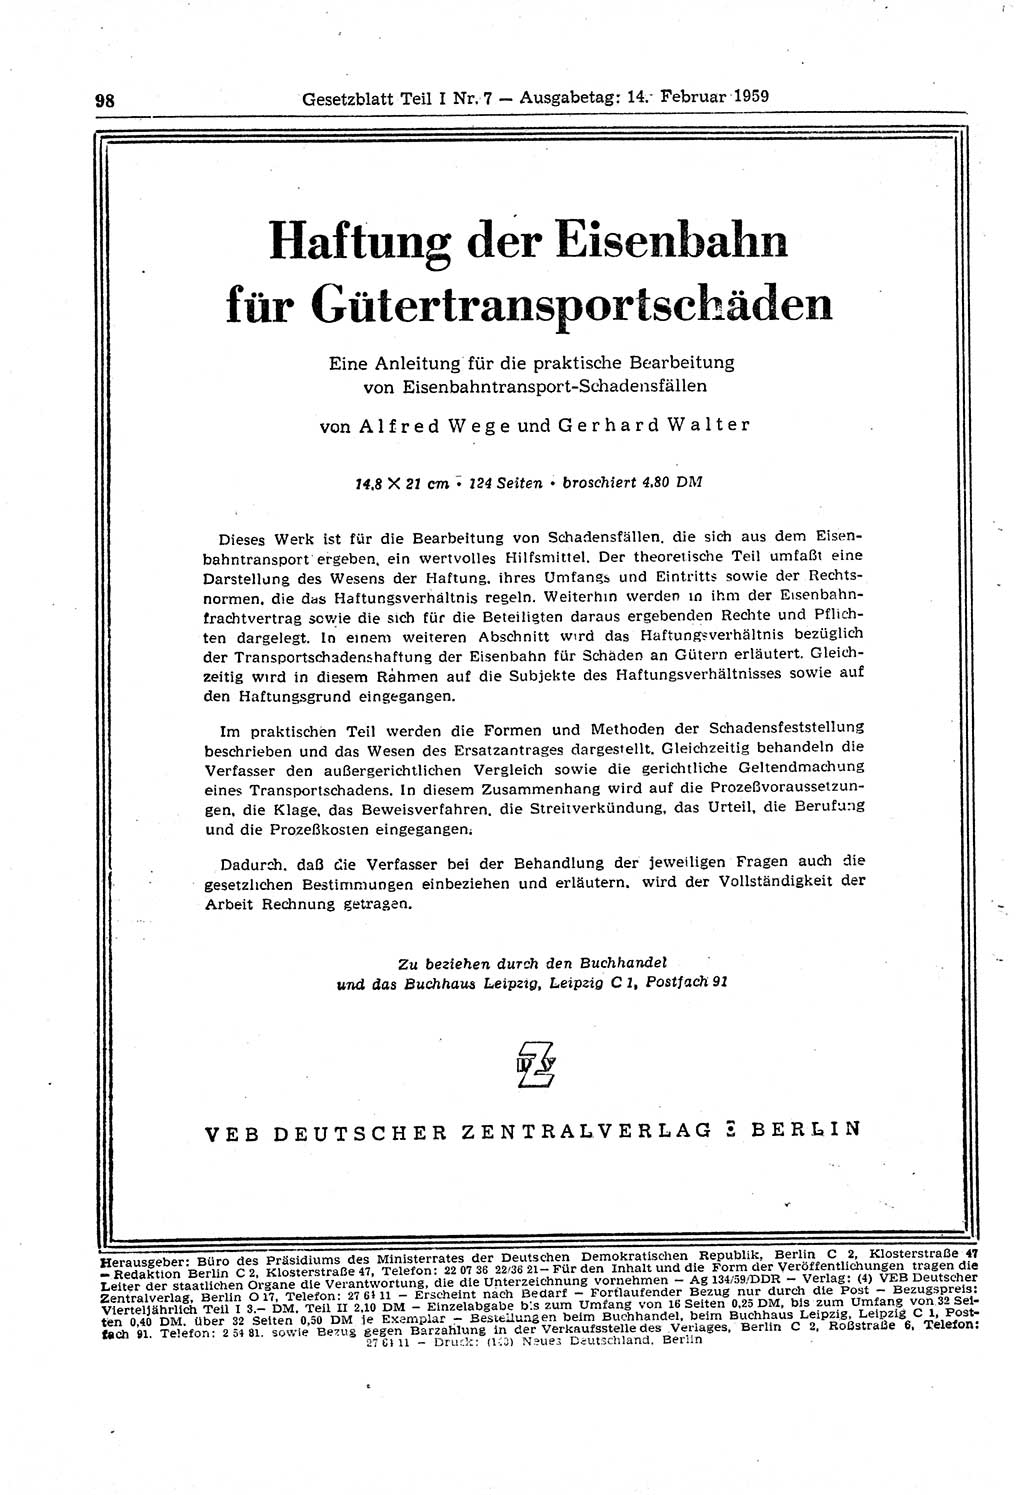 Gesetzblatt (GBl.) der Deutschen Demokratischen Republik (DDR) Teil Ⅰ 1959, Seite 98 (GBl. DDR Ⅰ 1959, S. 98)